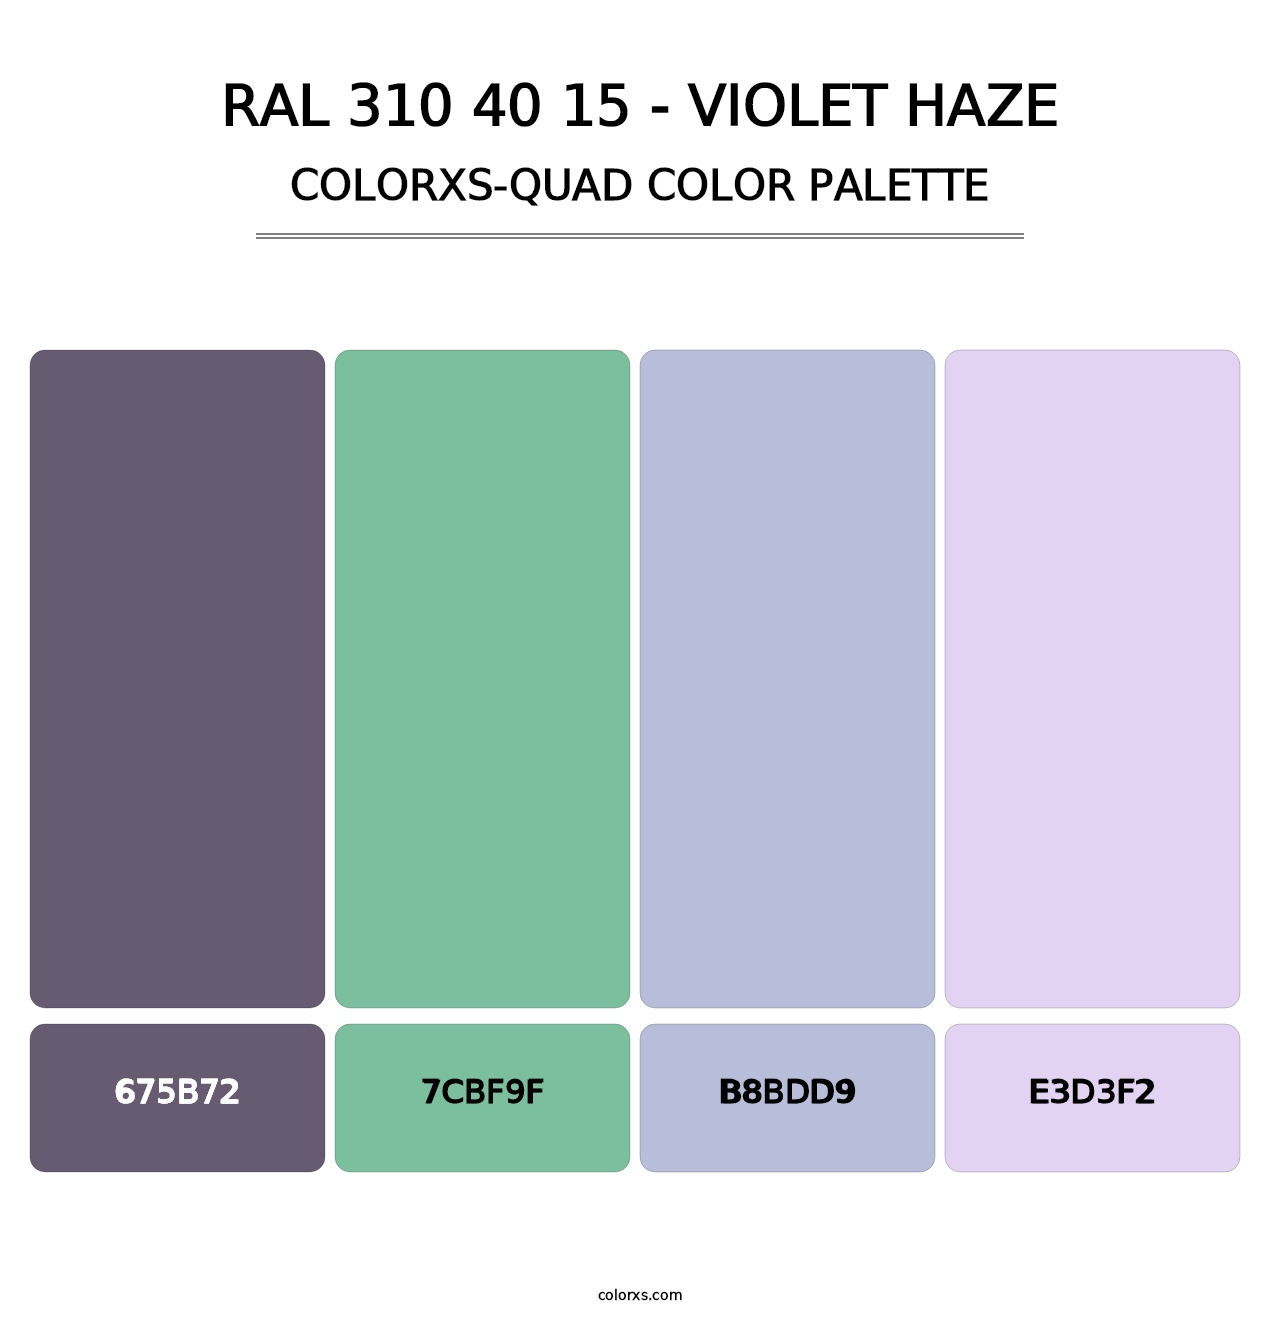 RAL 310 40 15 - Violet Haze - Colorxs Quad Palette